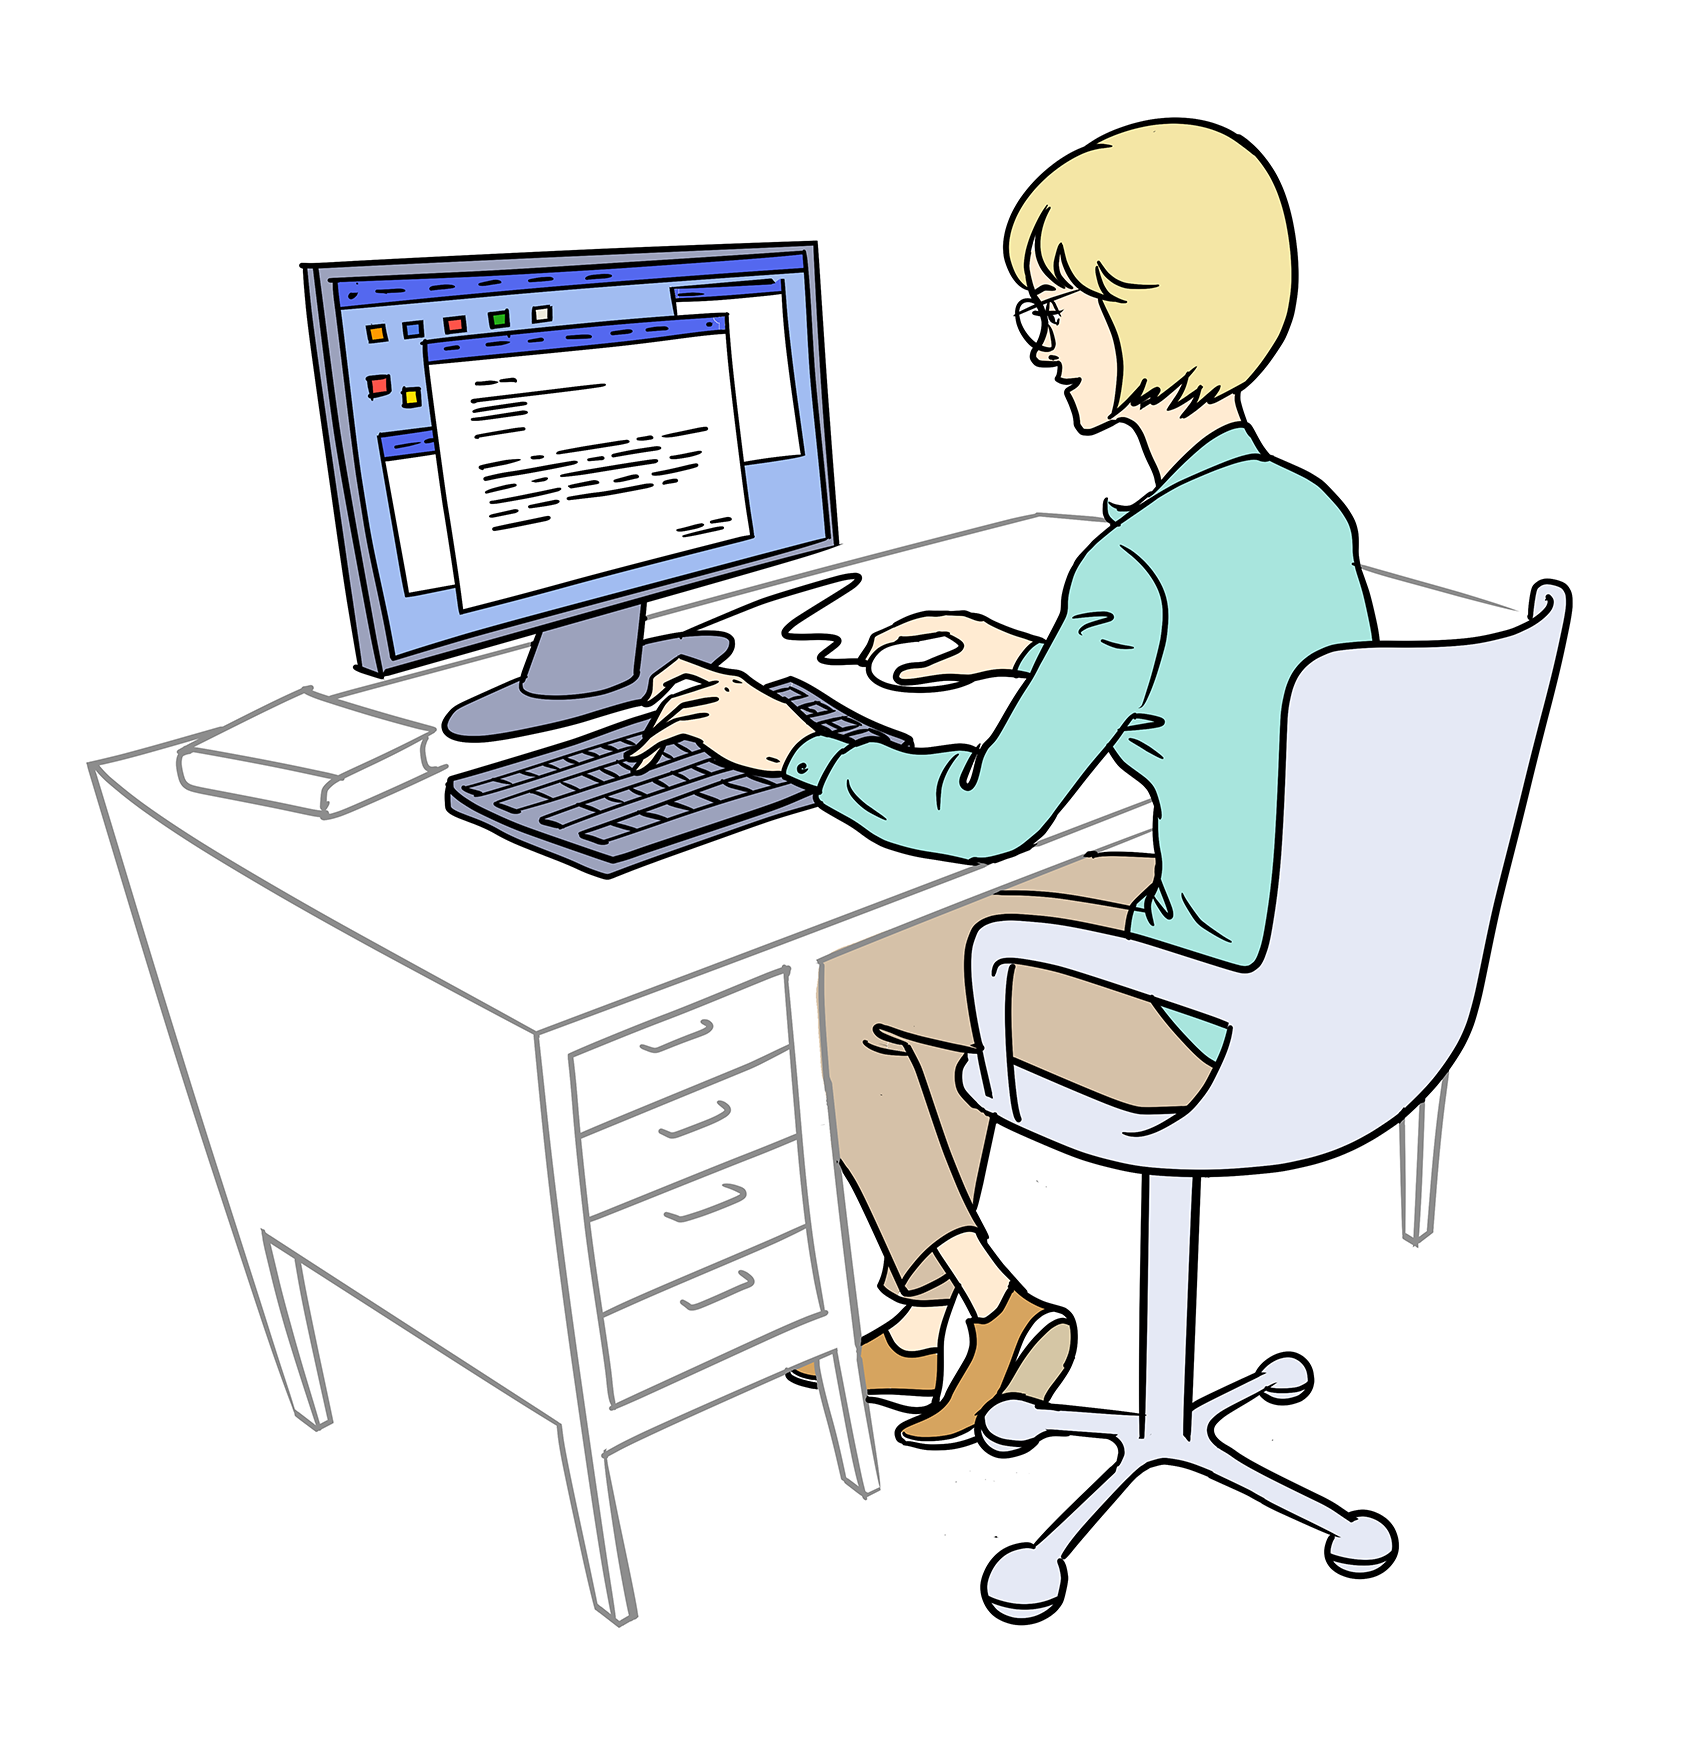 Illustration: Eine Frau mit kinnlangem, blondem Haar sitzt auf einem Bürostuhl an einem Schreibtisch. Man sieht sie schräg von hinten. Auf dem Schreibtisch steht ein Bildschirm. Die Frau tippt mit der linken Hand auf der vor ihr liegenden Tastatur, mit der rechten Hand bewegt sie eine Computer-Maus.